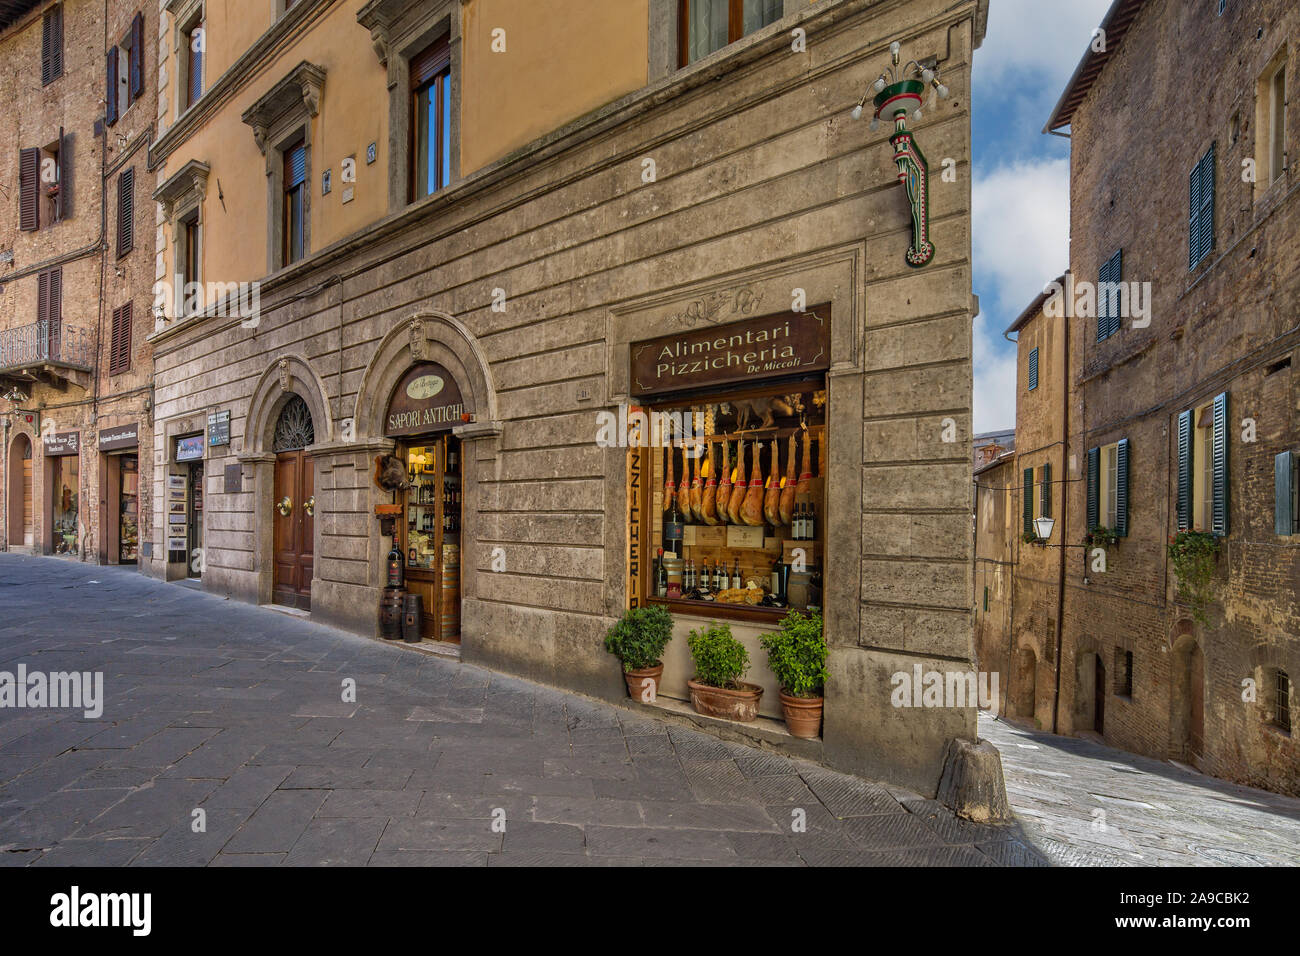 Negozio locale per la vendita di prosciutto, vino, formaggi e altri prodotti locali su la medievale strada stretta a Siena, Toscana, Italia Foto Stock